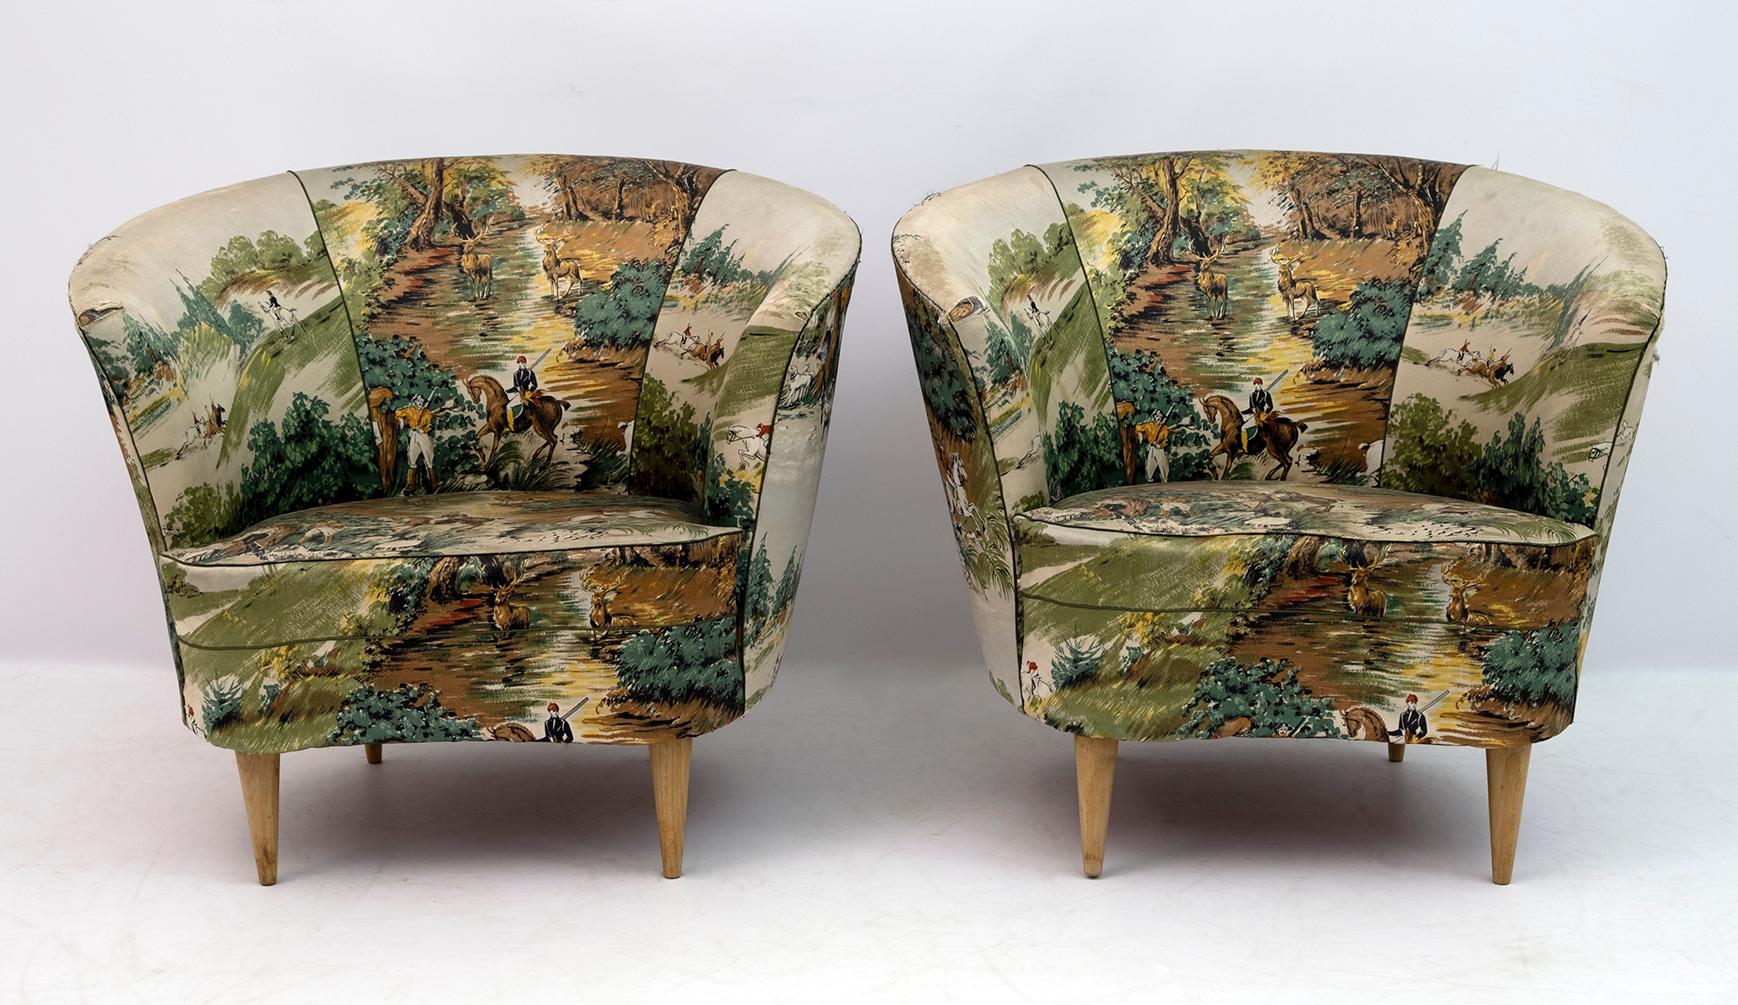 Paar Sessel von Casa e Giardino im Stil von Gio Ponti hergestellt, die Polsterung muss erneuert werden, während die Struktur ist robust und solide.

